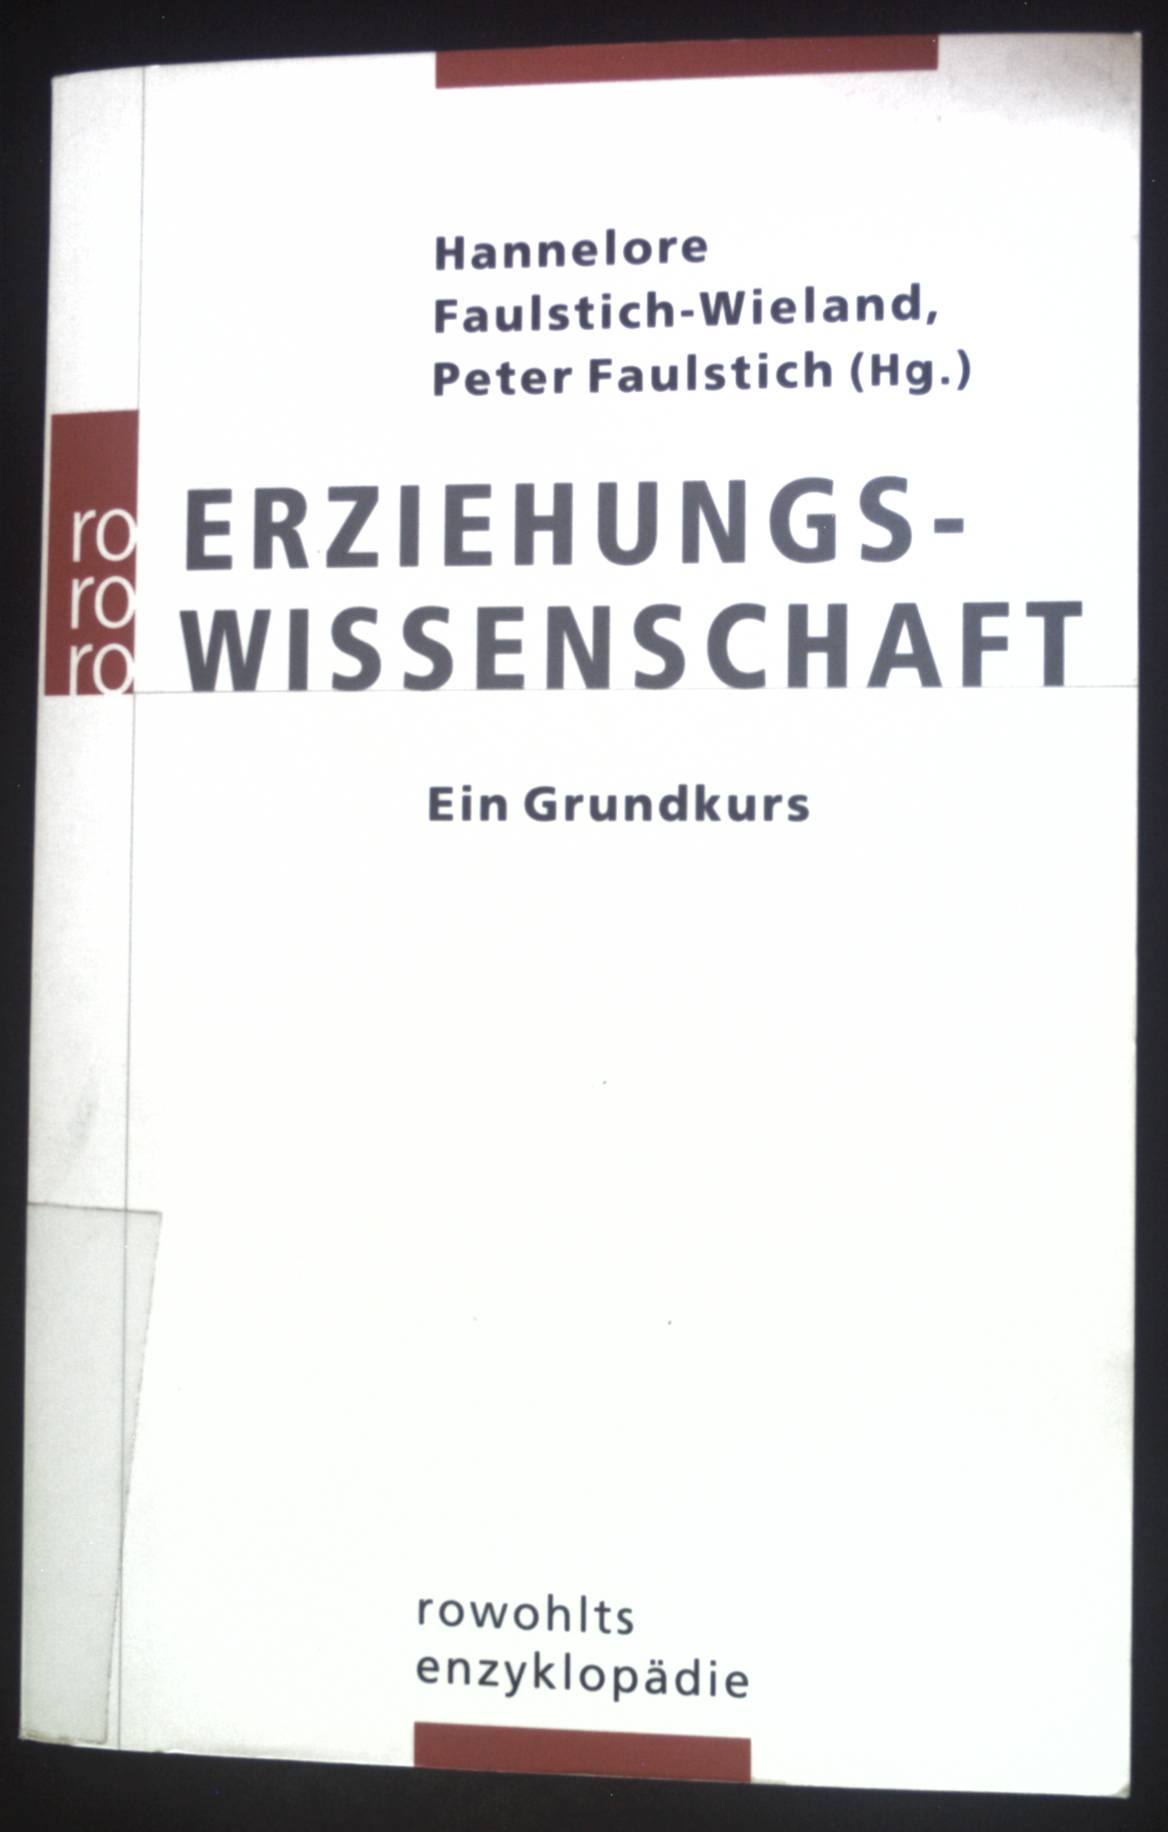 Erziehungswissenschaft : ein Grundkurs. Rororo ; 55692 : Rowohlts Enzyklopädie - Faulstich-Wieland, Hannelore